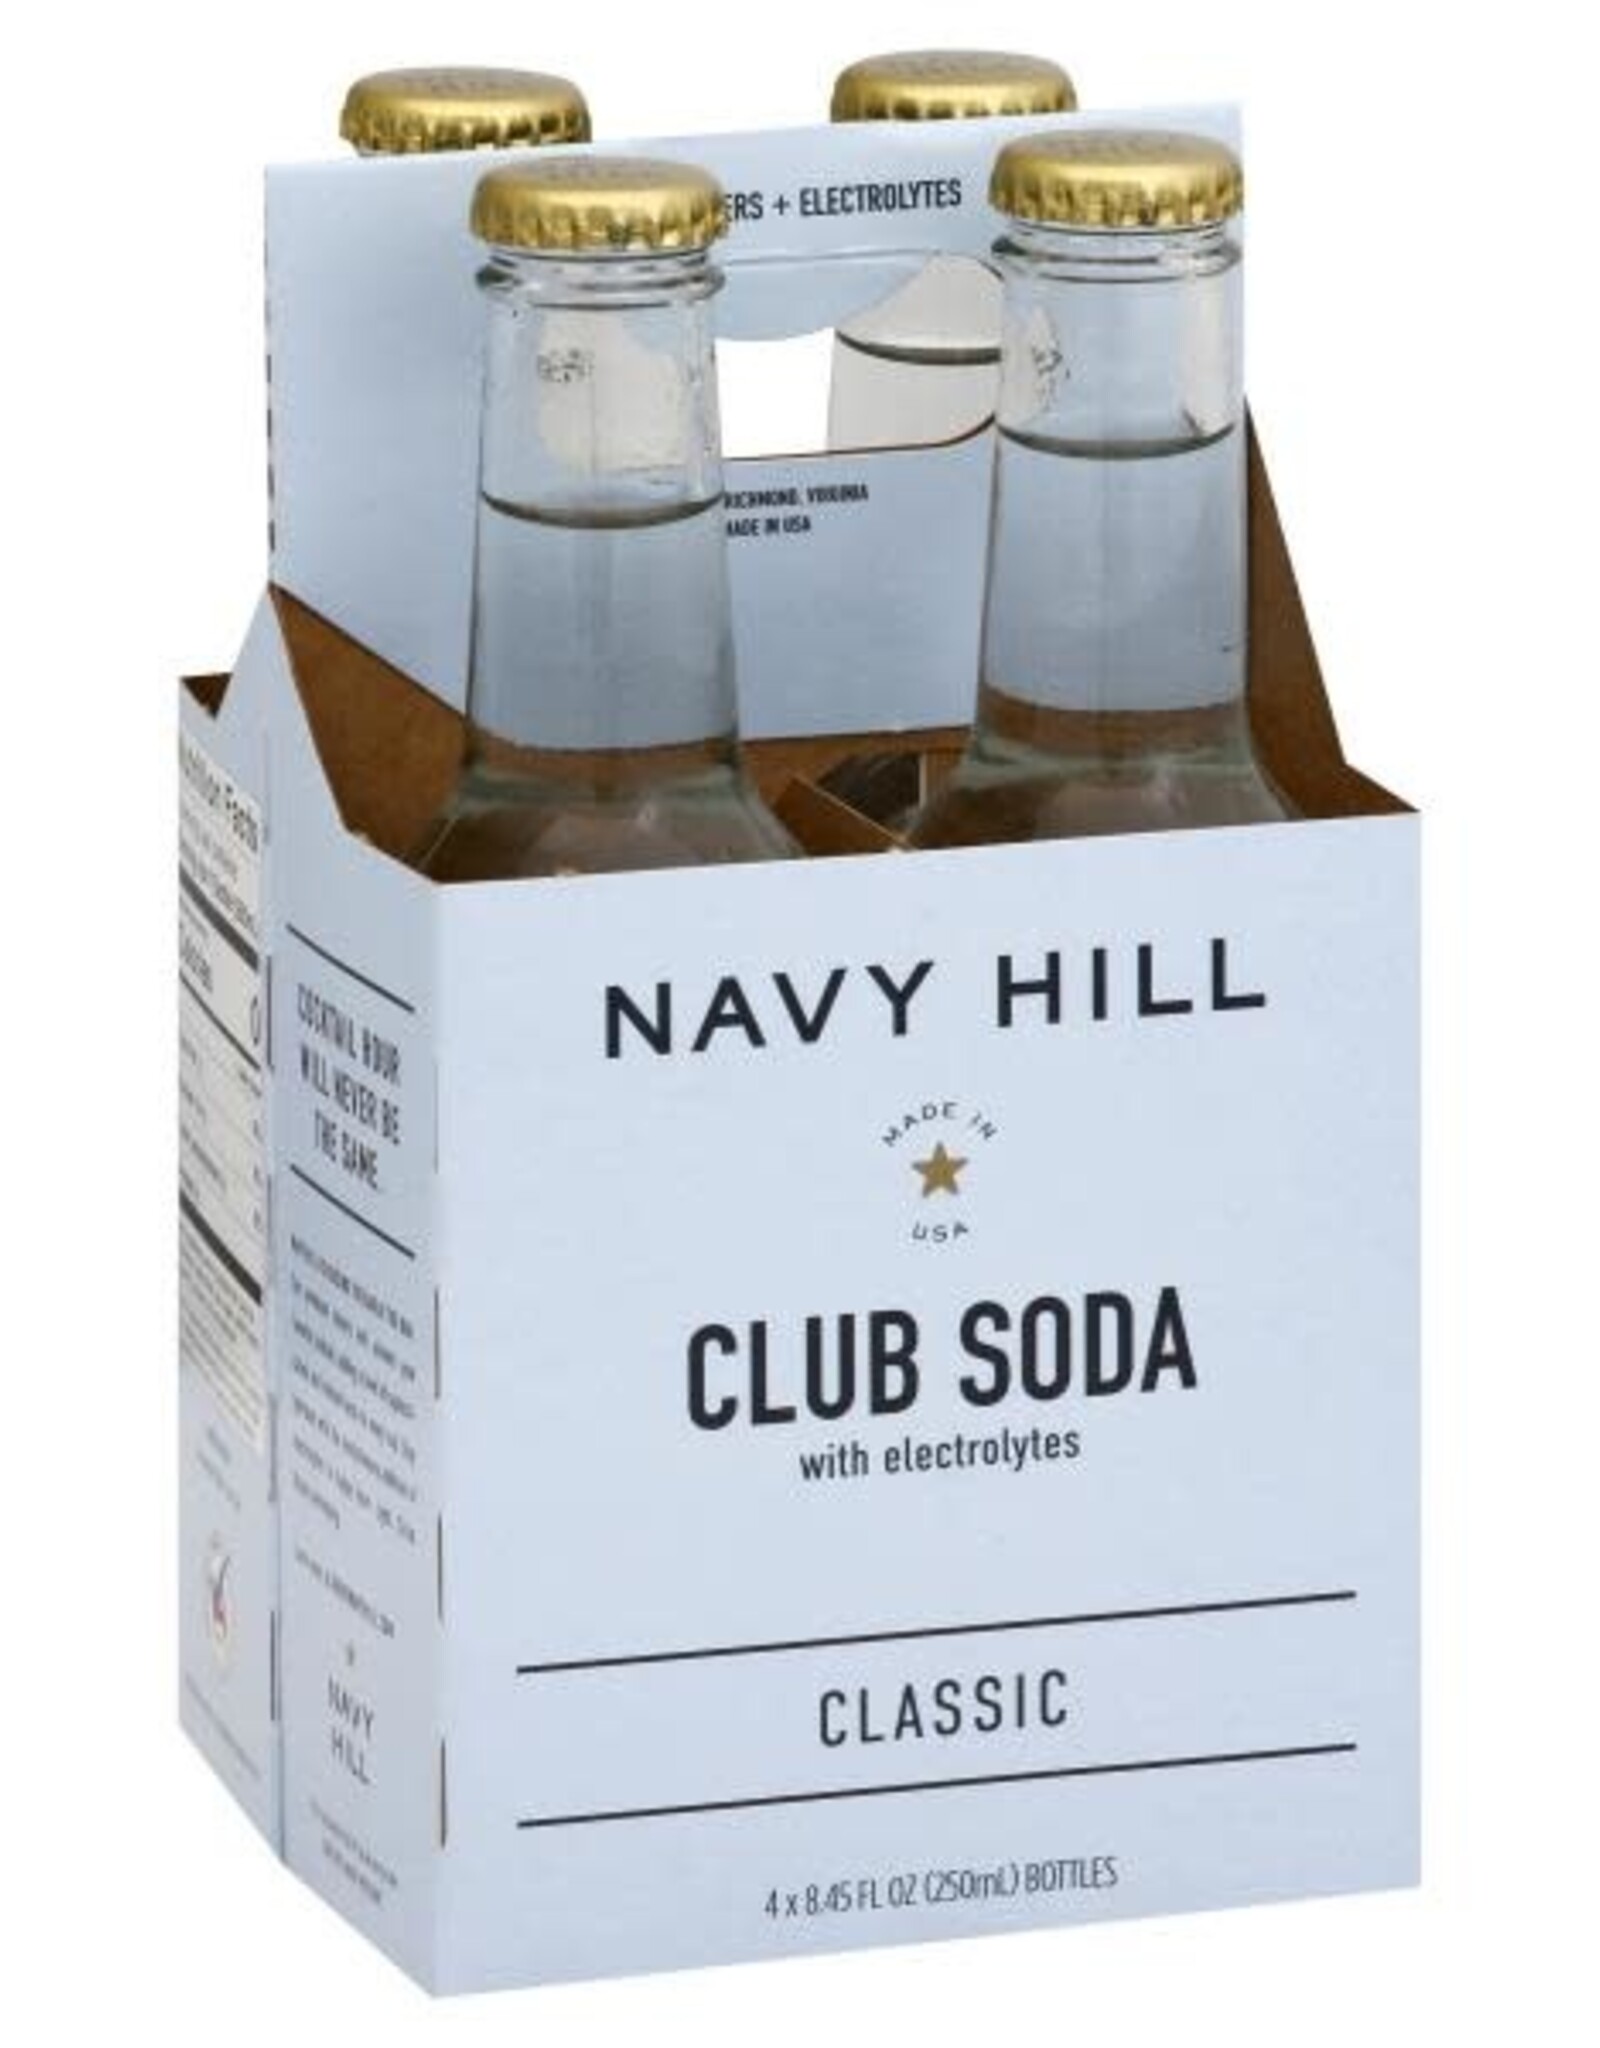 Navy Hill Navy Hill Club Soda